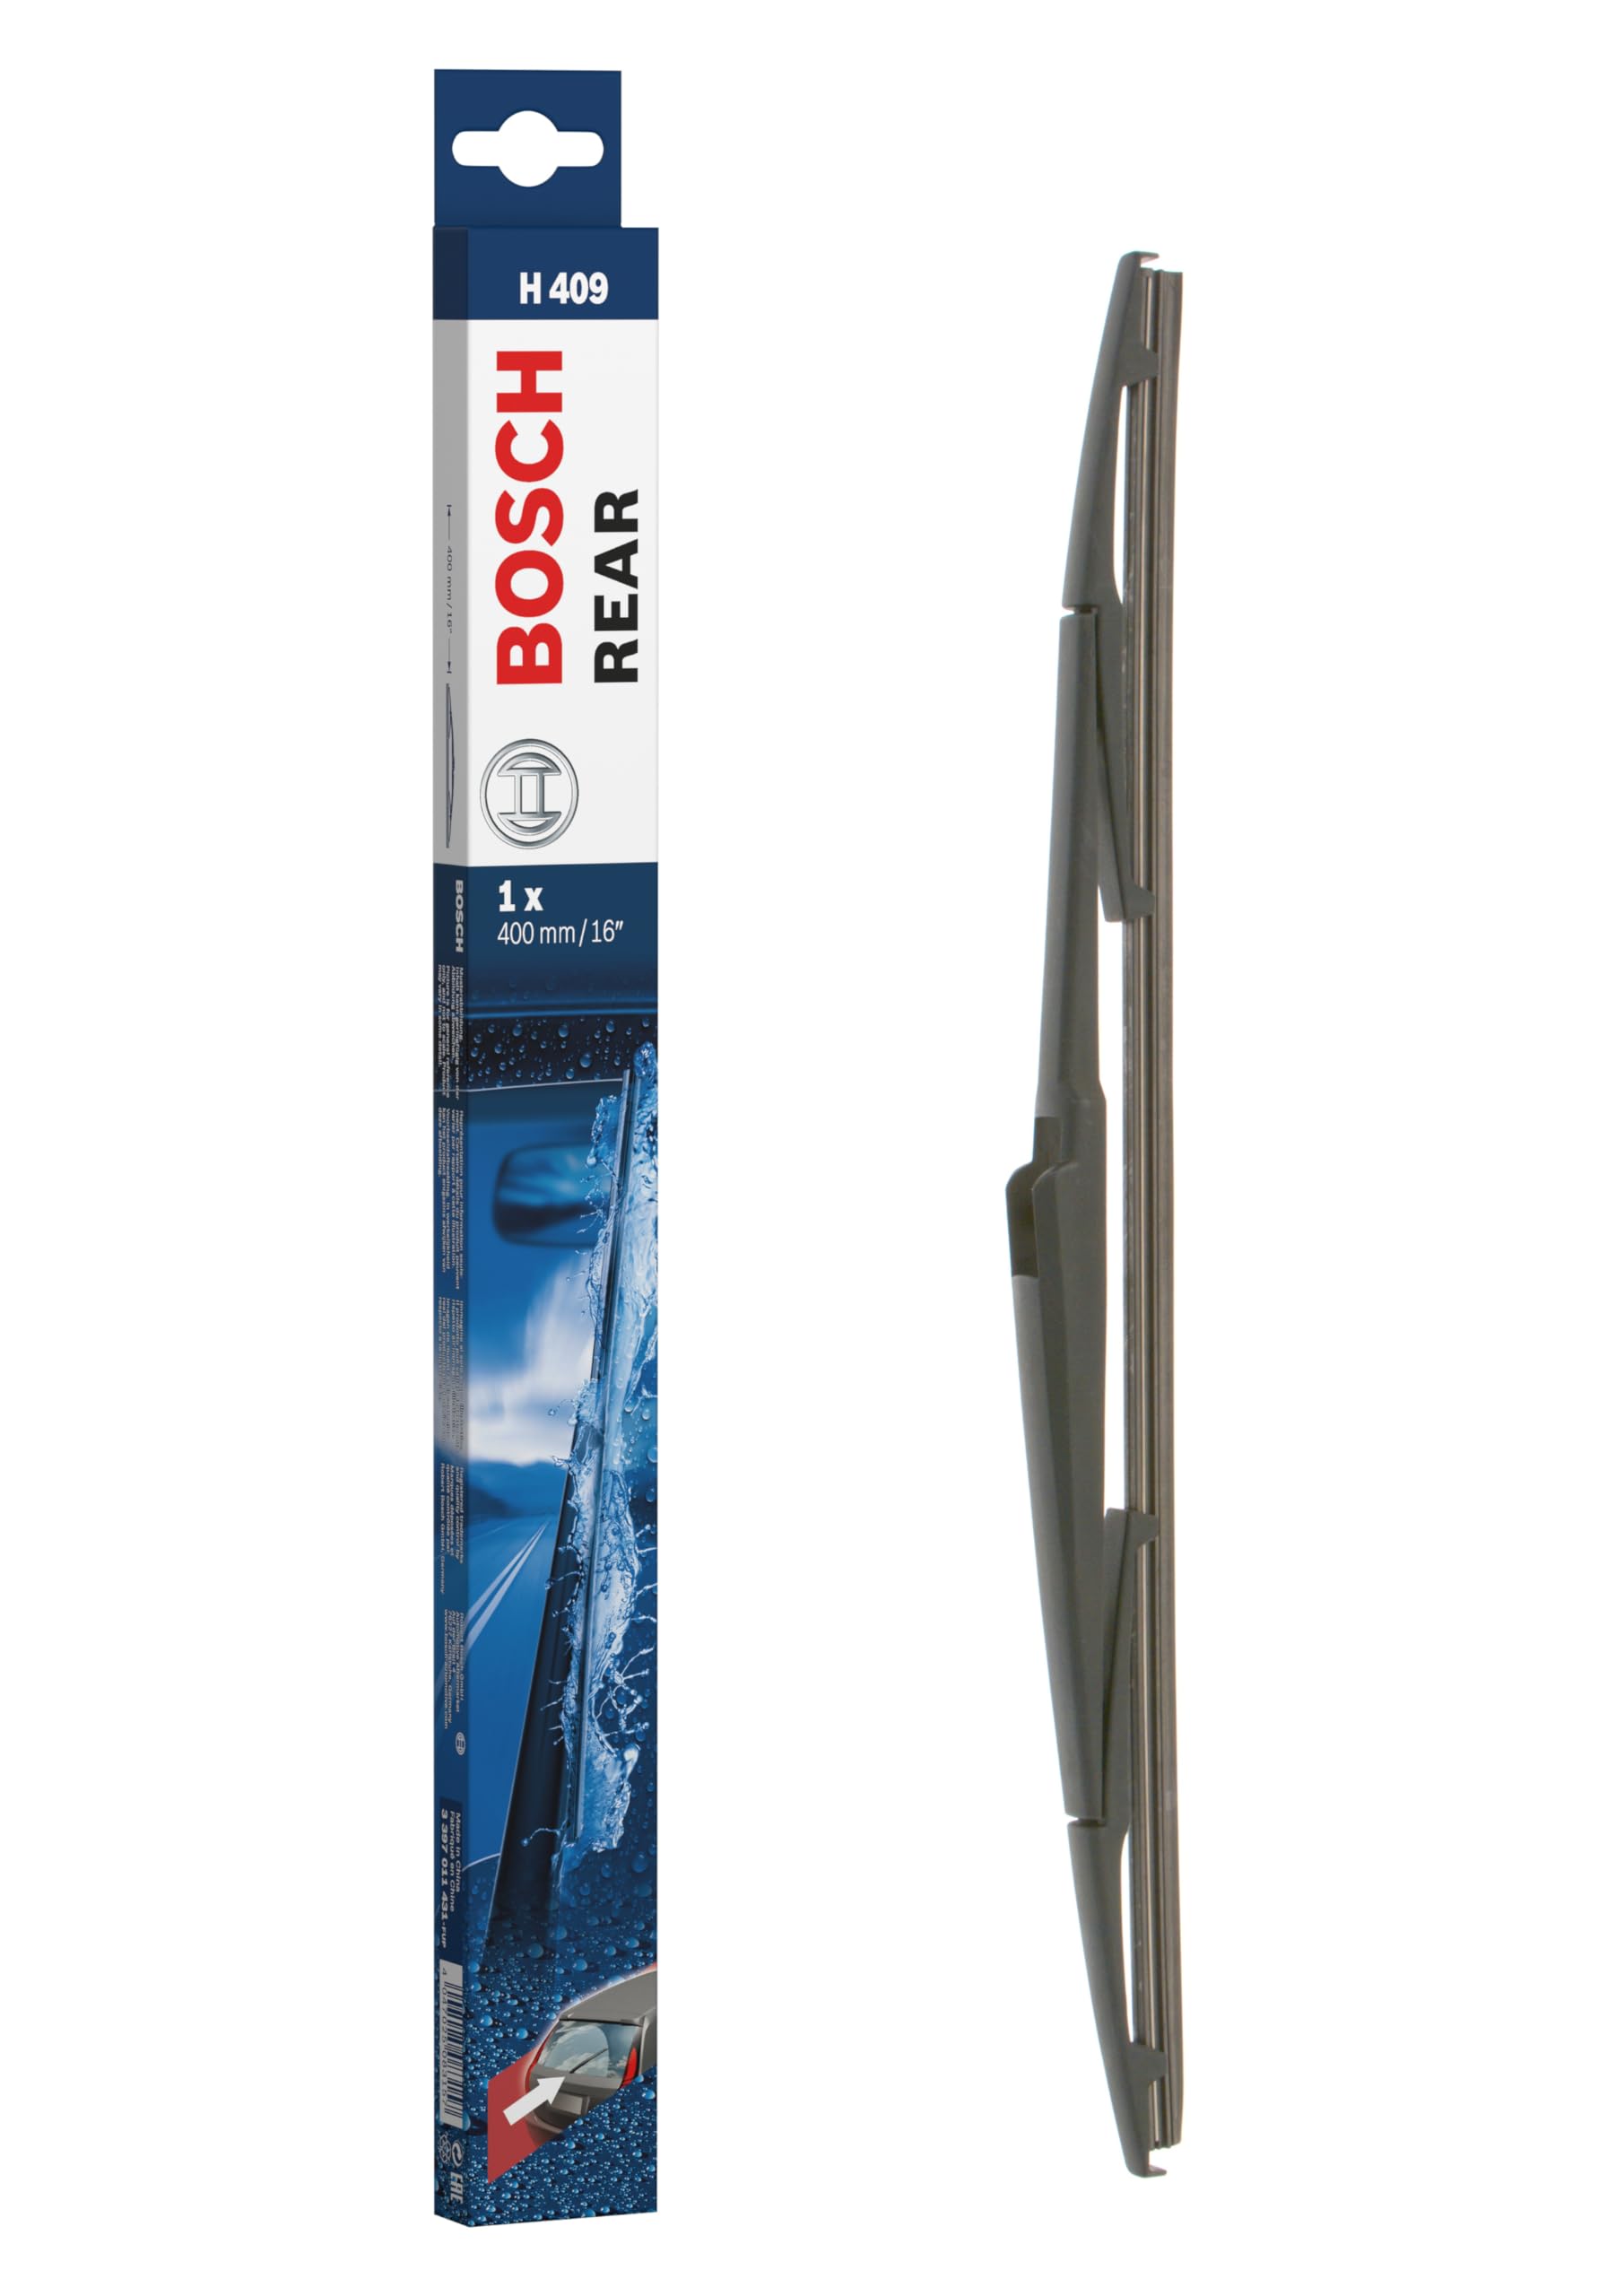 Bosch Scheibenwischer Rear H409, Länge: 400mm – Scheibenwischer für Heckscheibe, Wiper Blade von Bosch Automotive